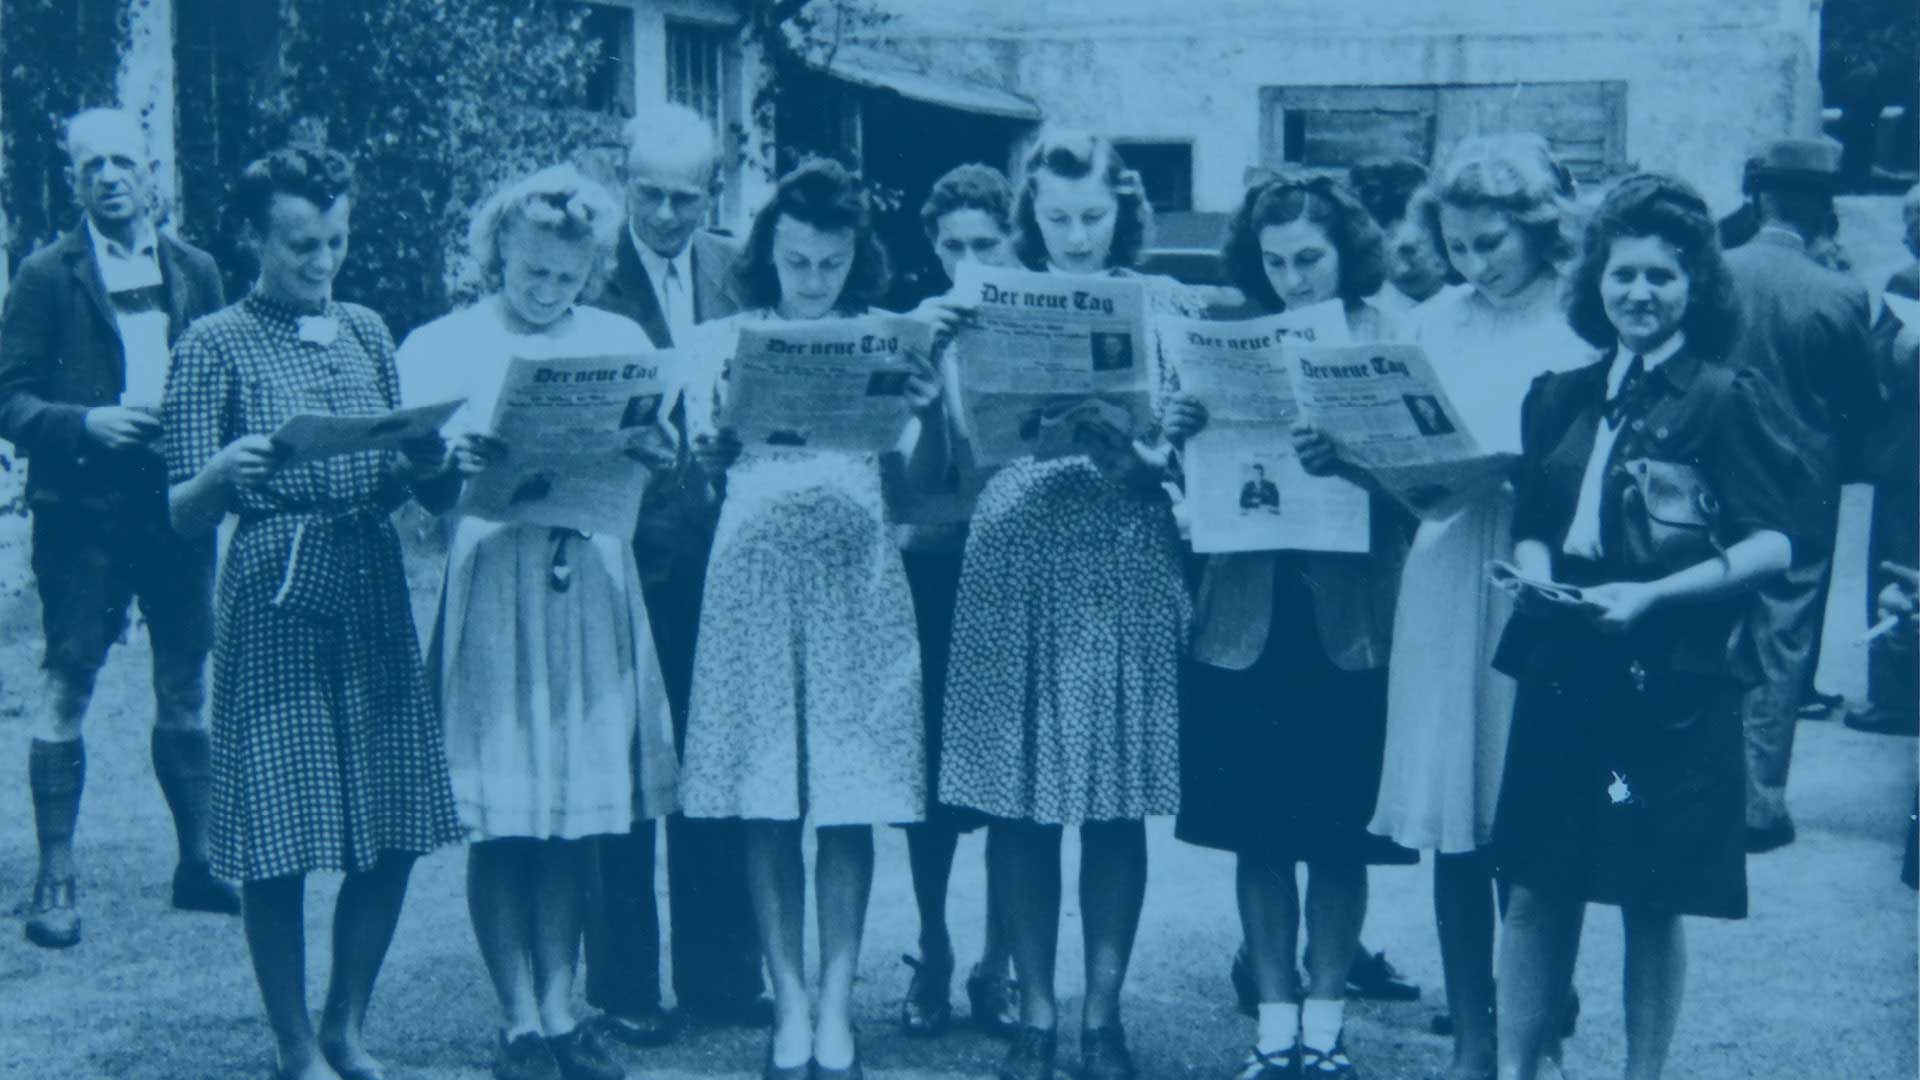 Gruppe von Frauen aus den 40er Jahren mit der Tageszeitung „Der neue Tag“ in den Händen.